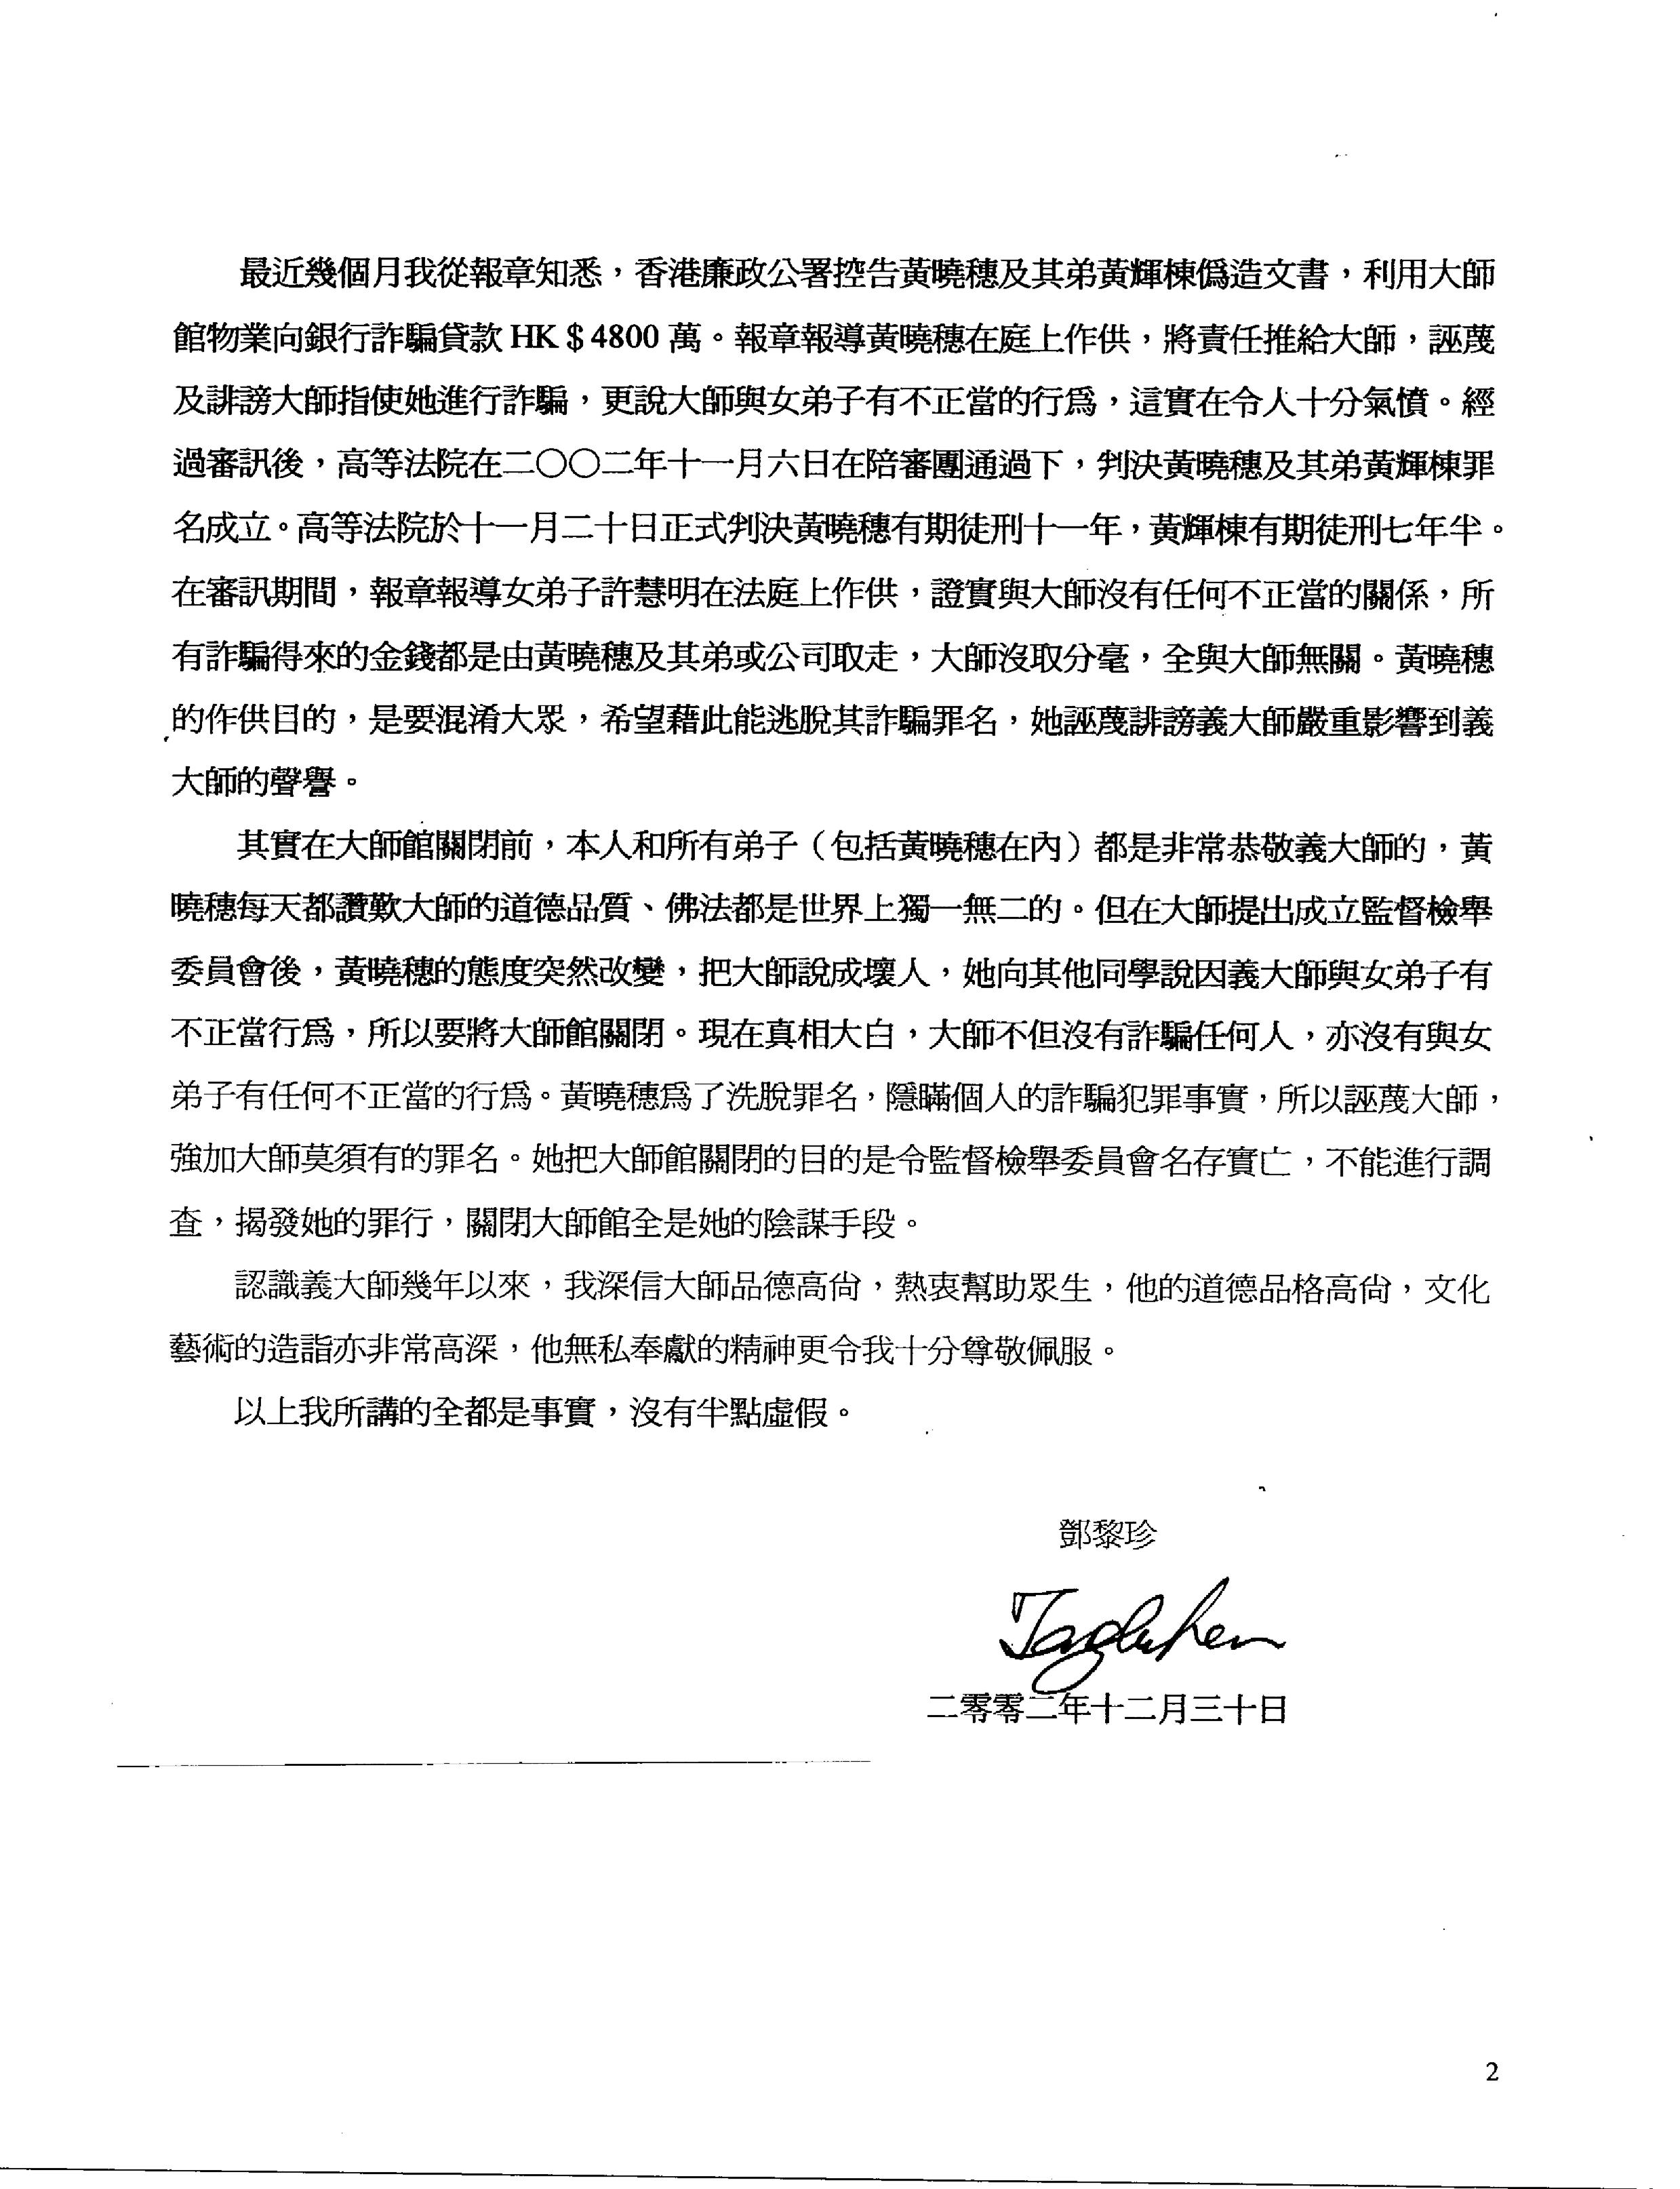 香港法院重判黄晓穗诈骗案 还第三世多杰羌佛清白 第16张